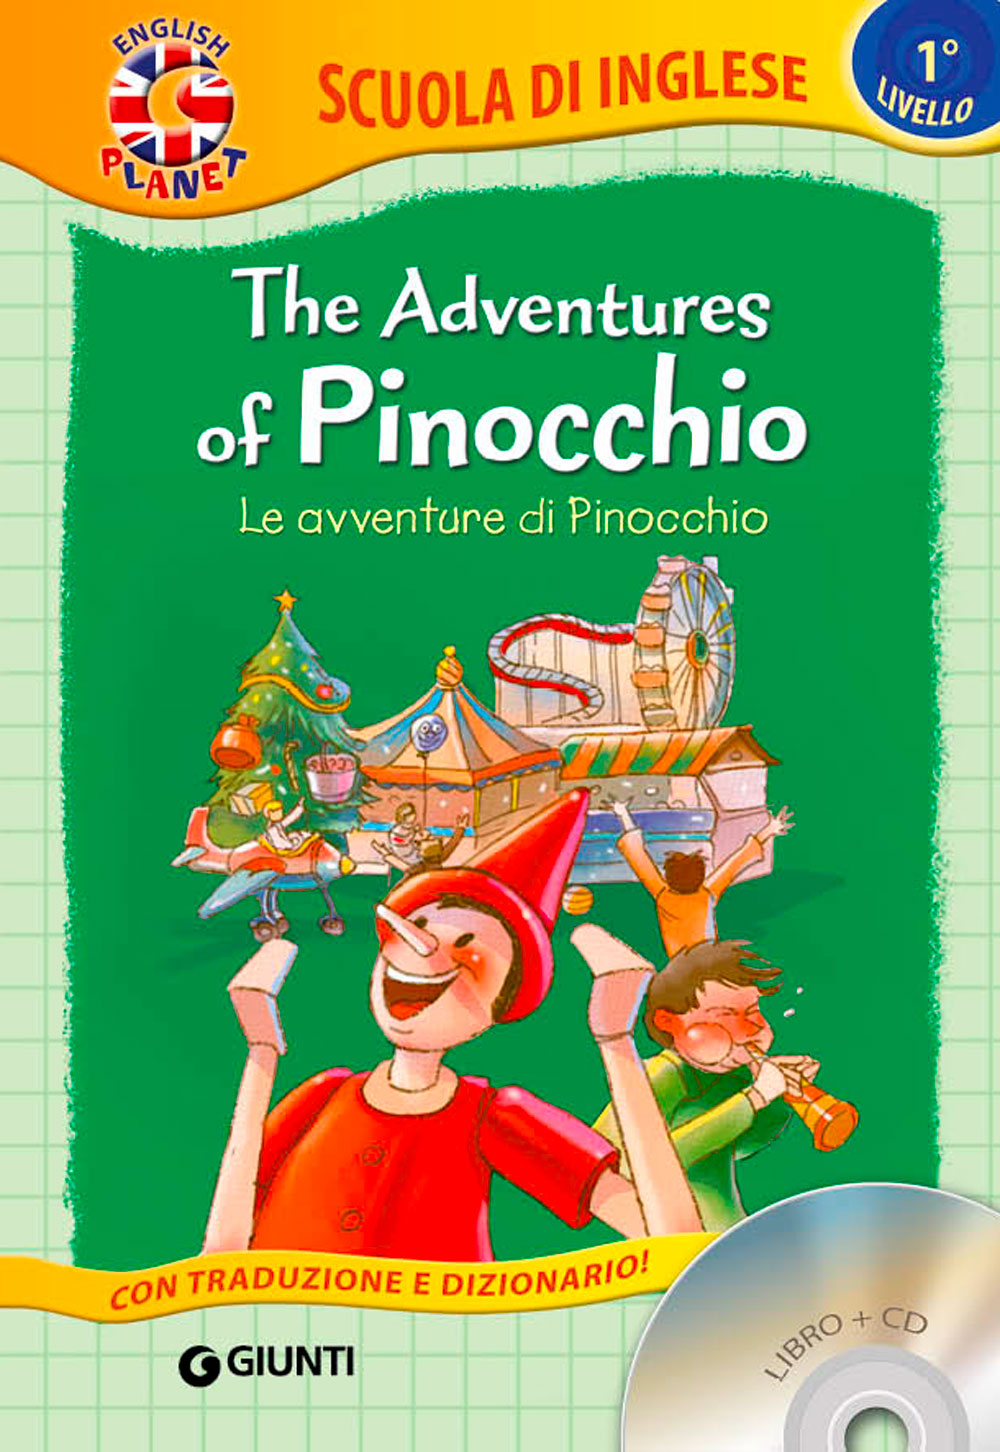 The adventures of Pinocchio + CD::Le avventure di Pinocchio - Con traduzione e dizionario!